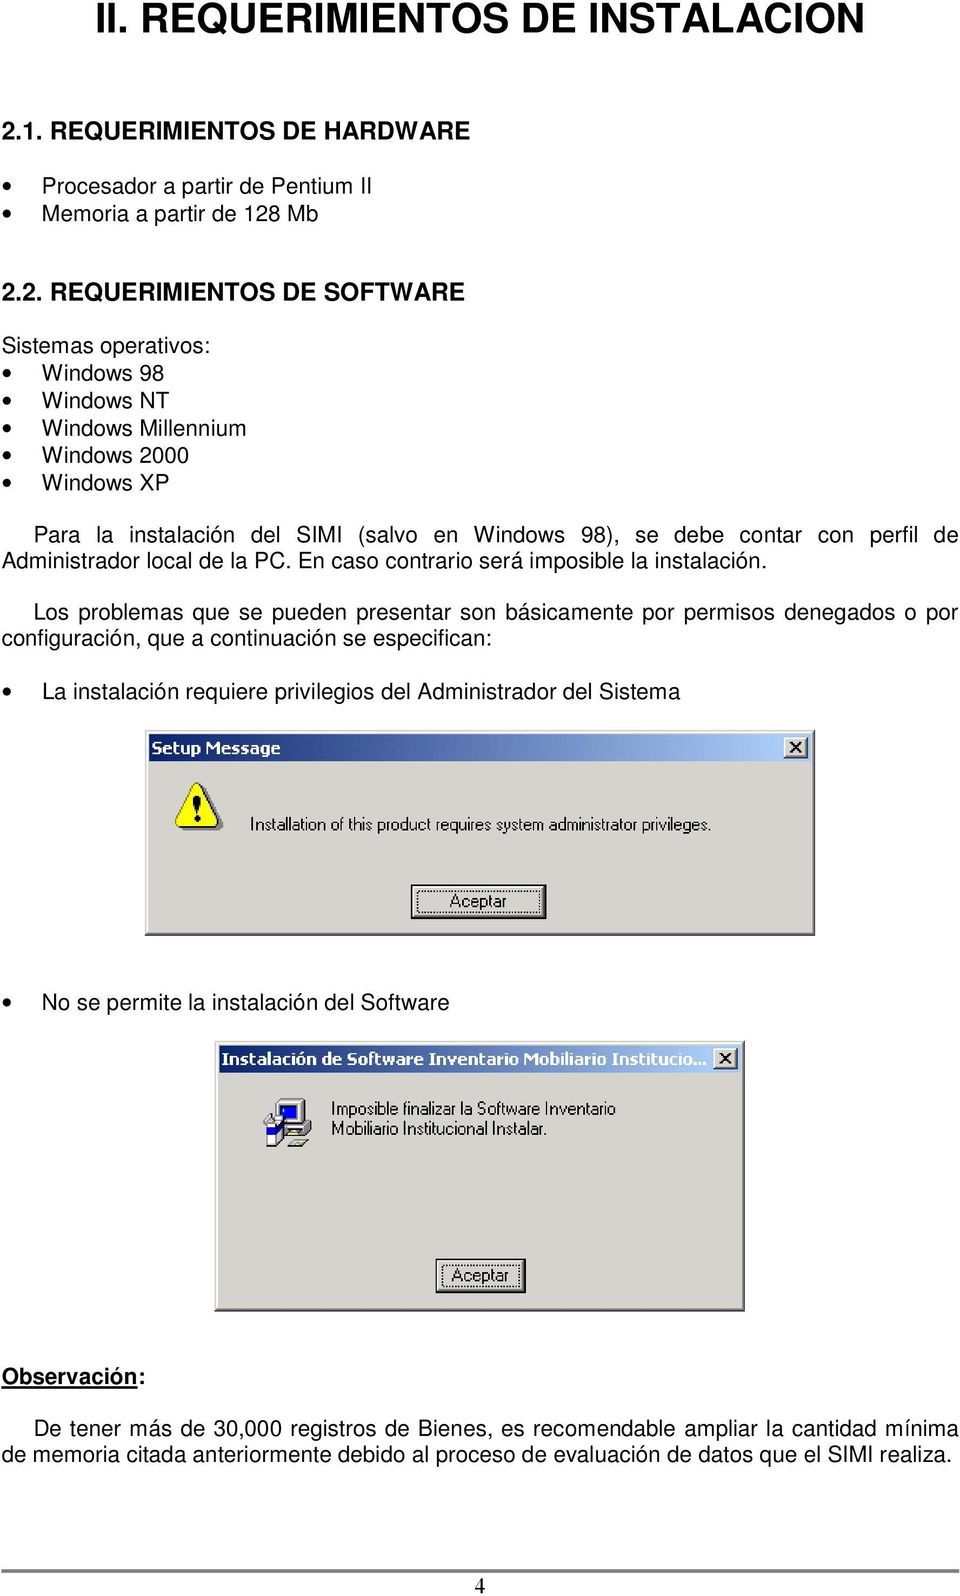 Mb 2.2. REQUERIMIENTOS DE SOFTWARE Sistemas operativos: Windows 98 Windows NT Windows Millennium Windows 2000 Windows XP Para la instalación del SIMI (salvo en Windows 98), se debe contar con perfil